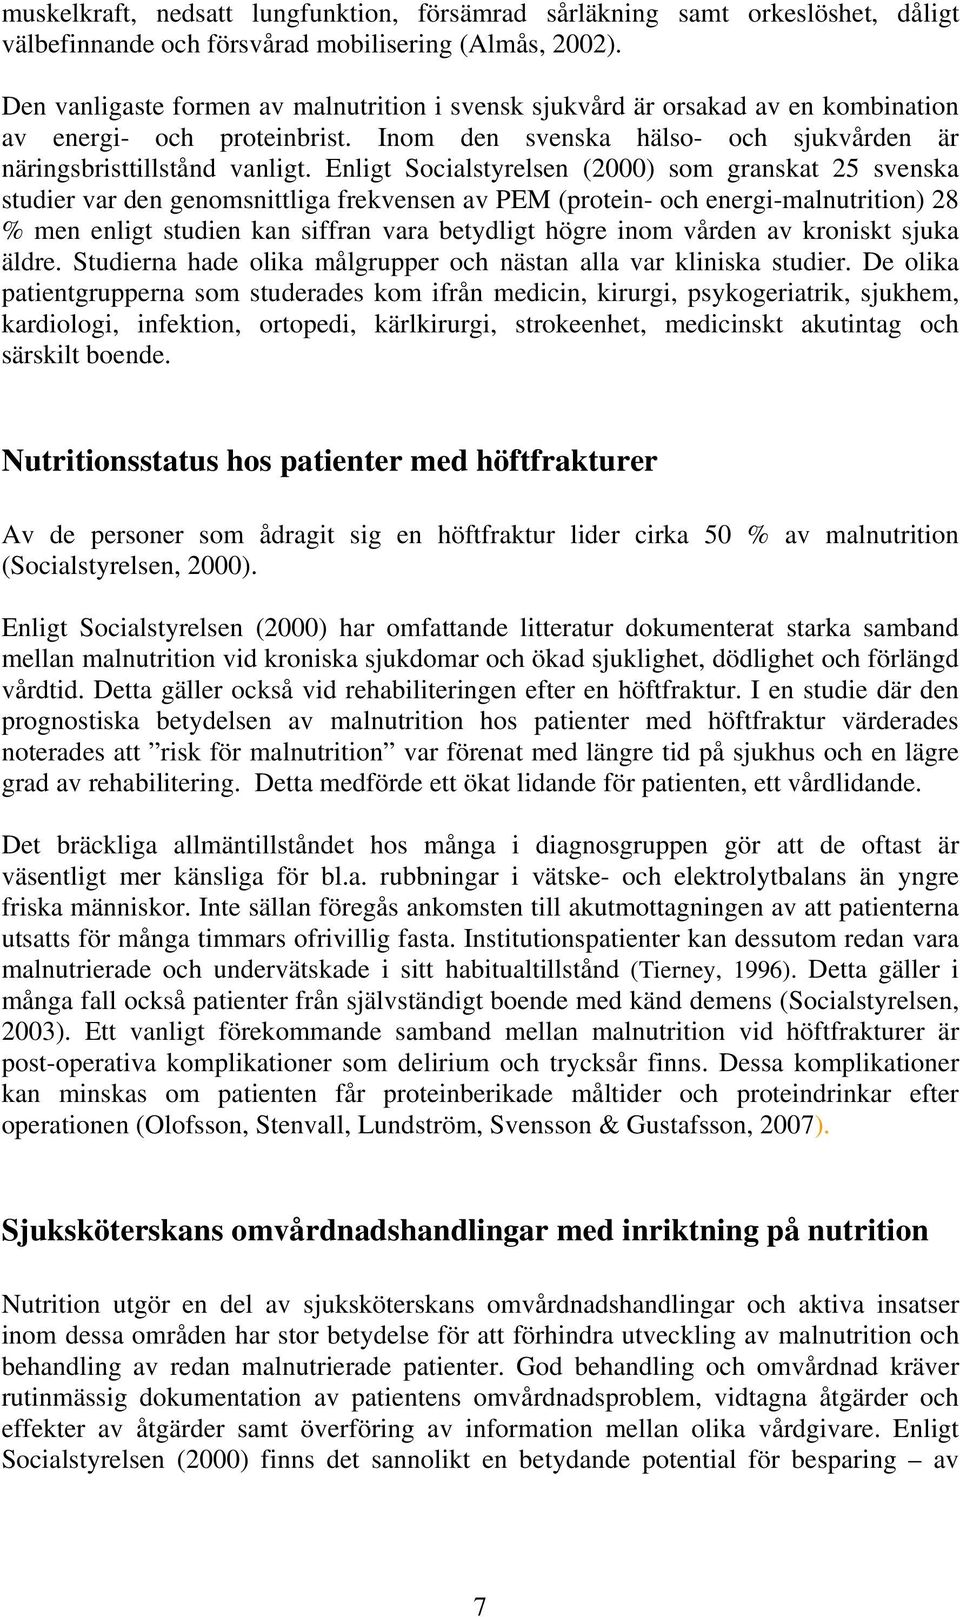 Enligt Socialstyrelsen (2000) som granskat 25 svenska studier var den genomsnittliga frekvensen av PEM (protein- och energi-malnutrition) 28 % men enligt studien kan siffran vara betydligt högre inom